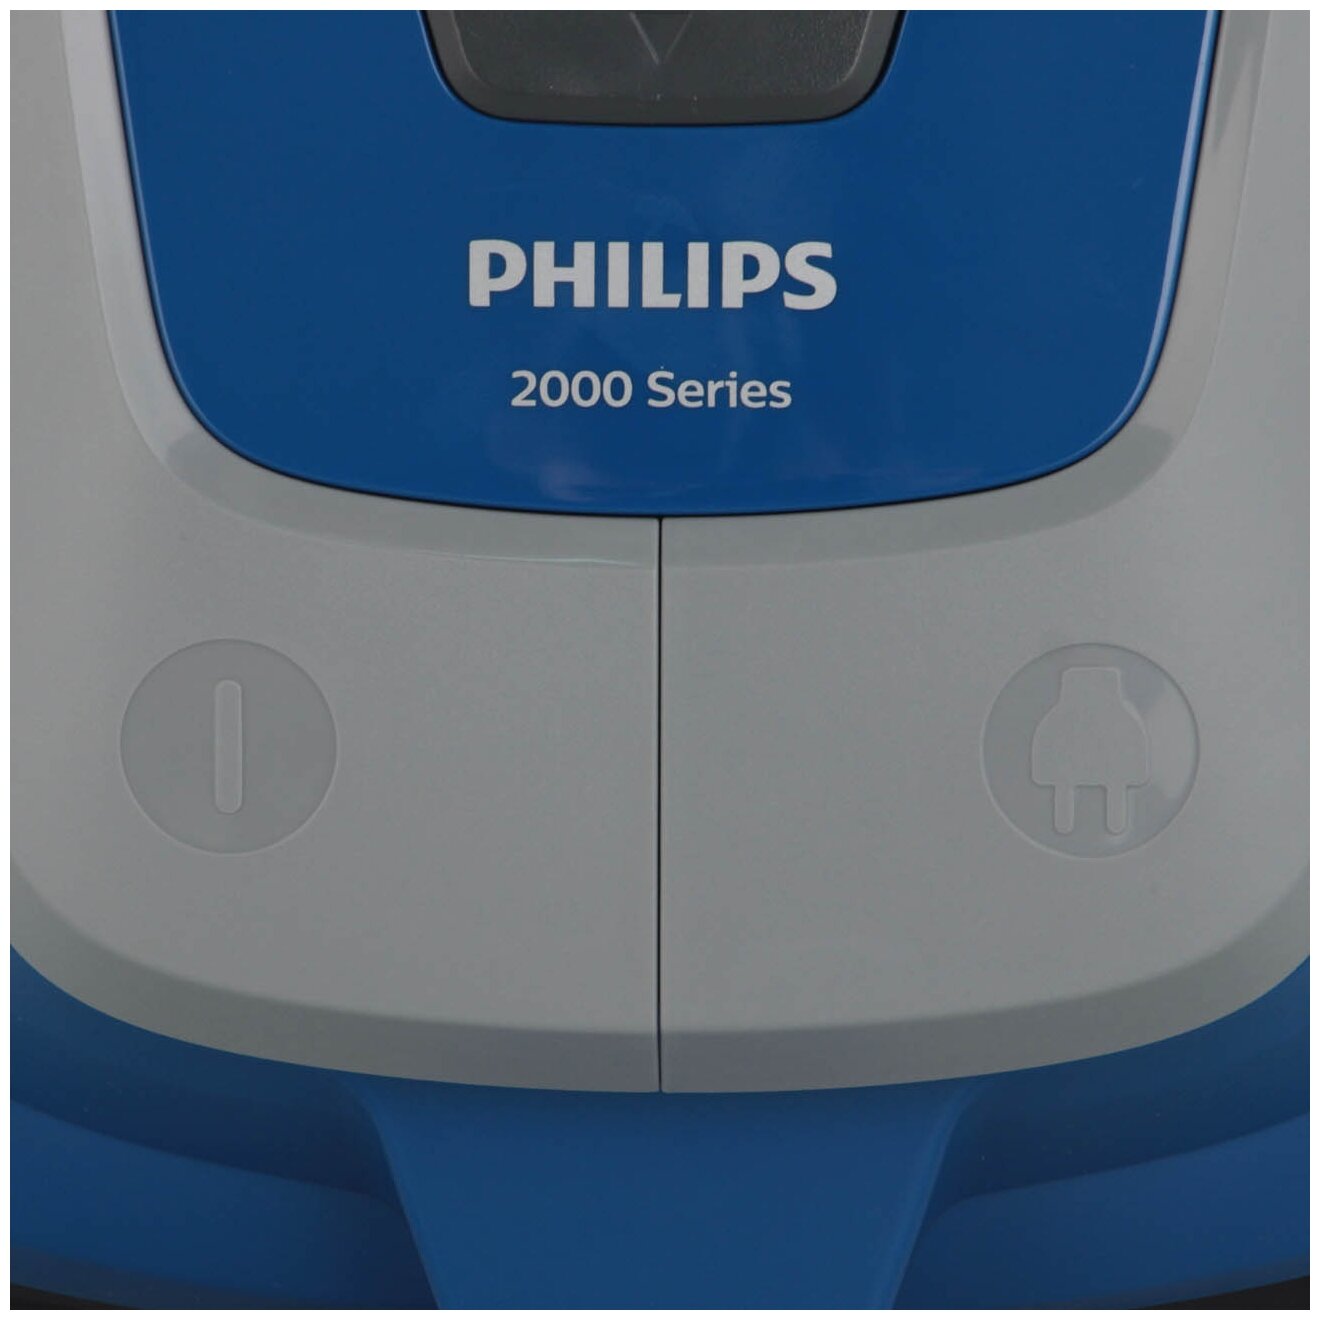 Пылесос philips 2000 series